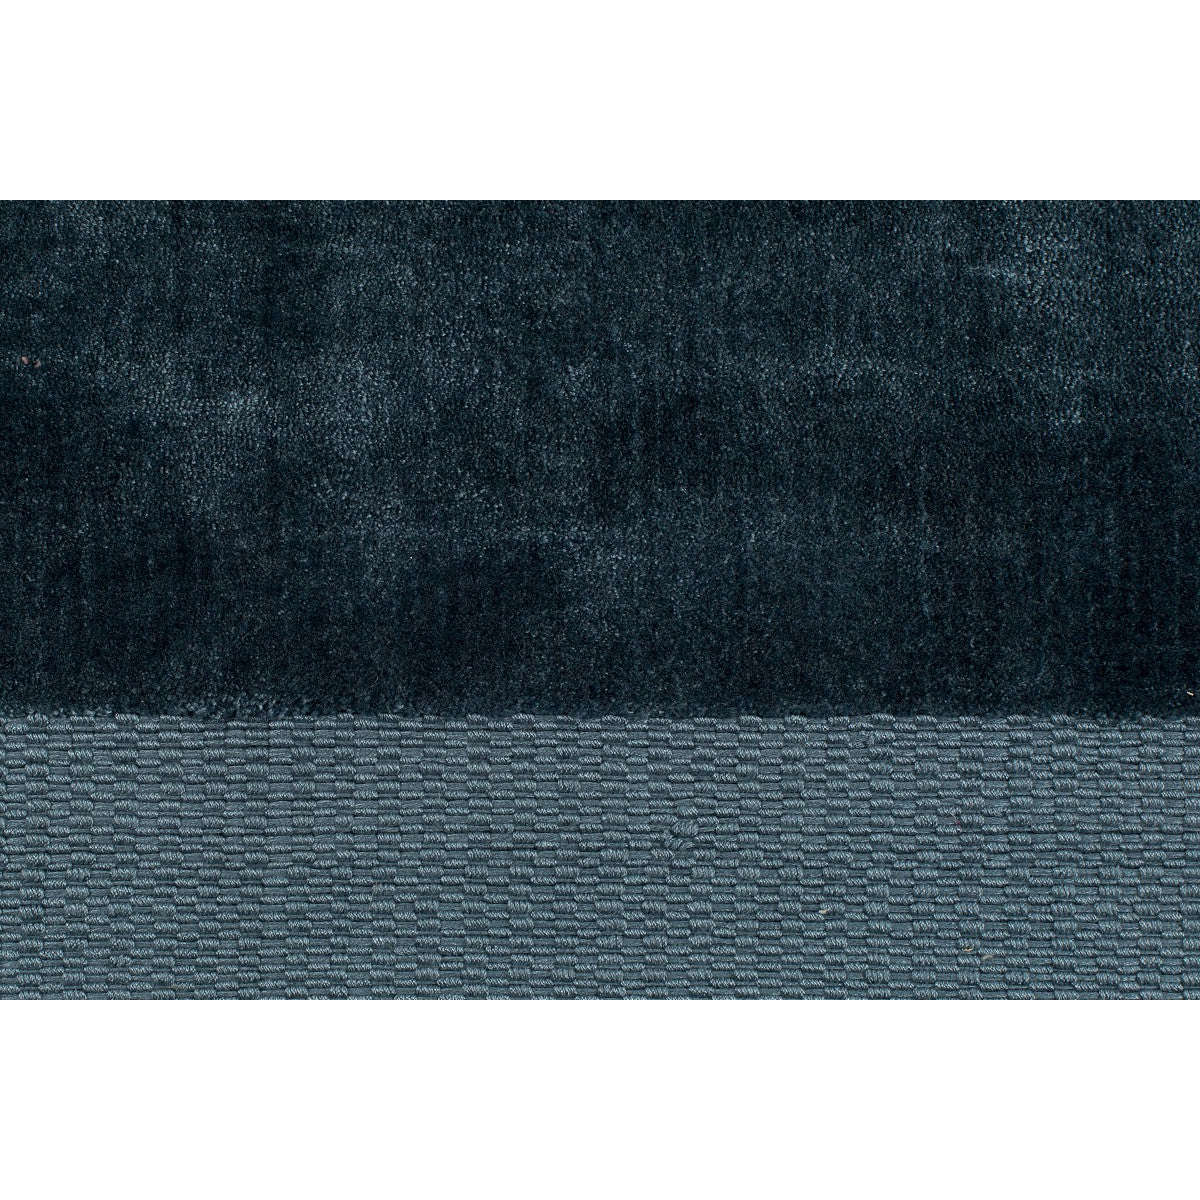 Zuiver vloerkleed blink blauw 300 x 200 x 0,6 cm